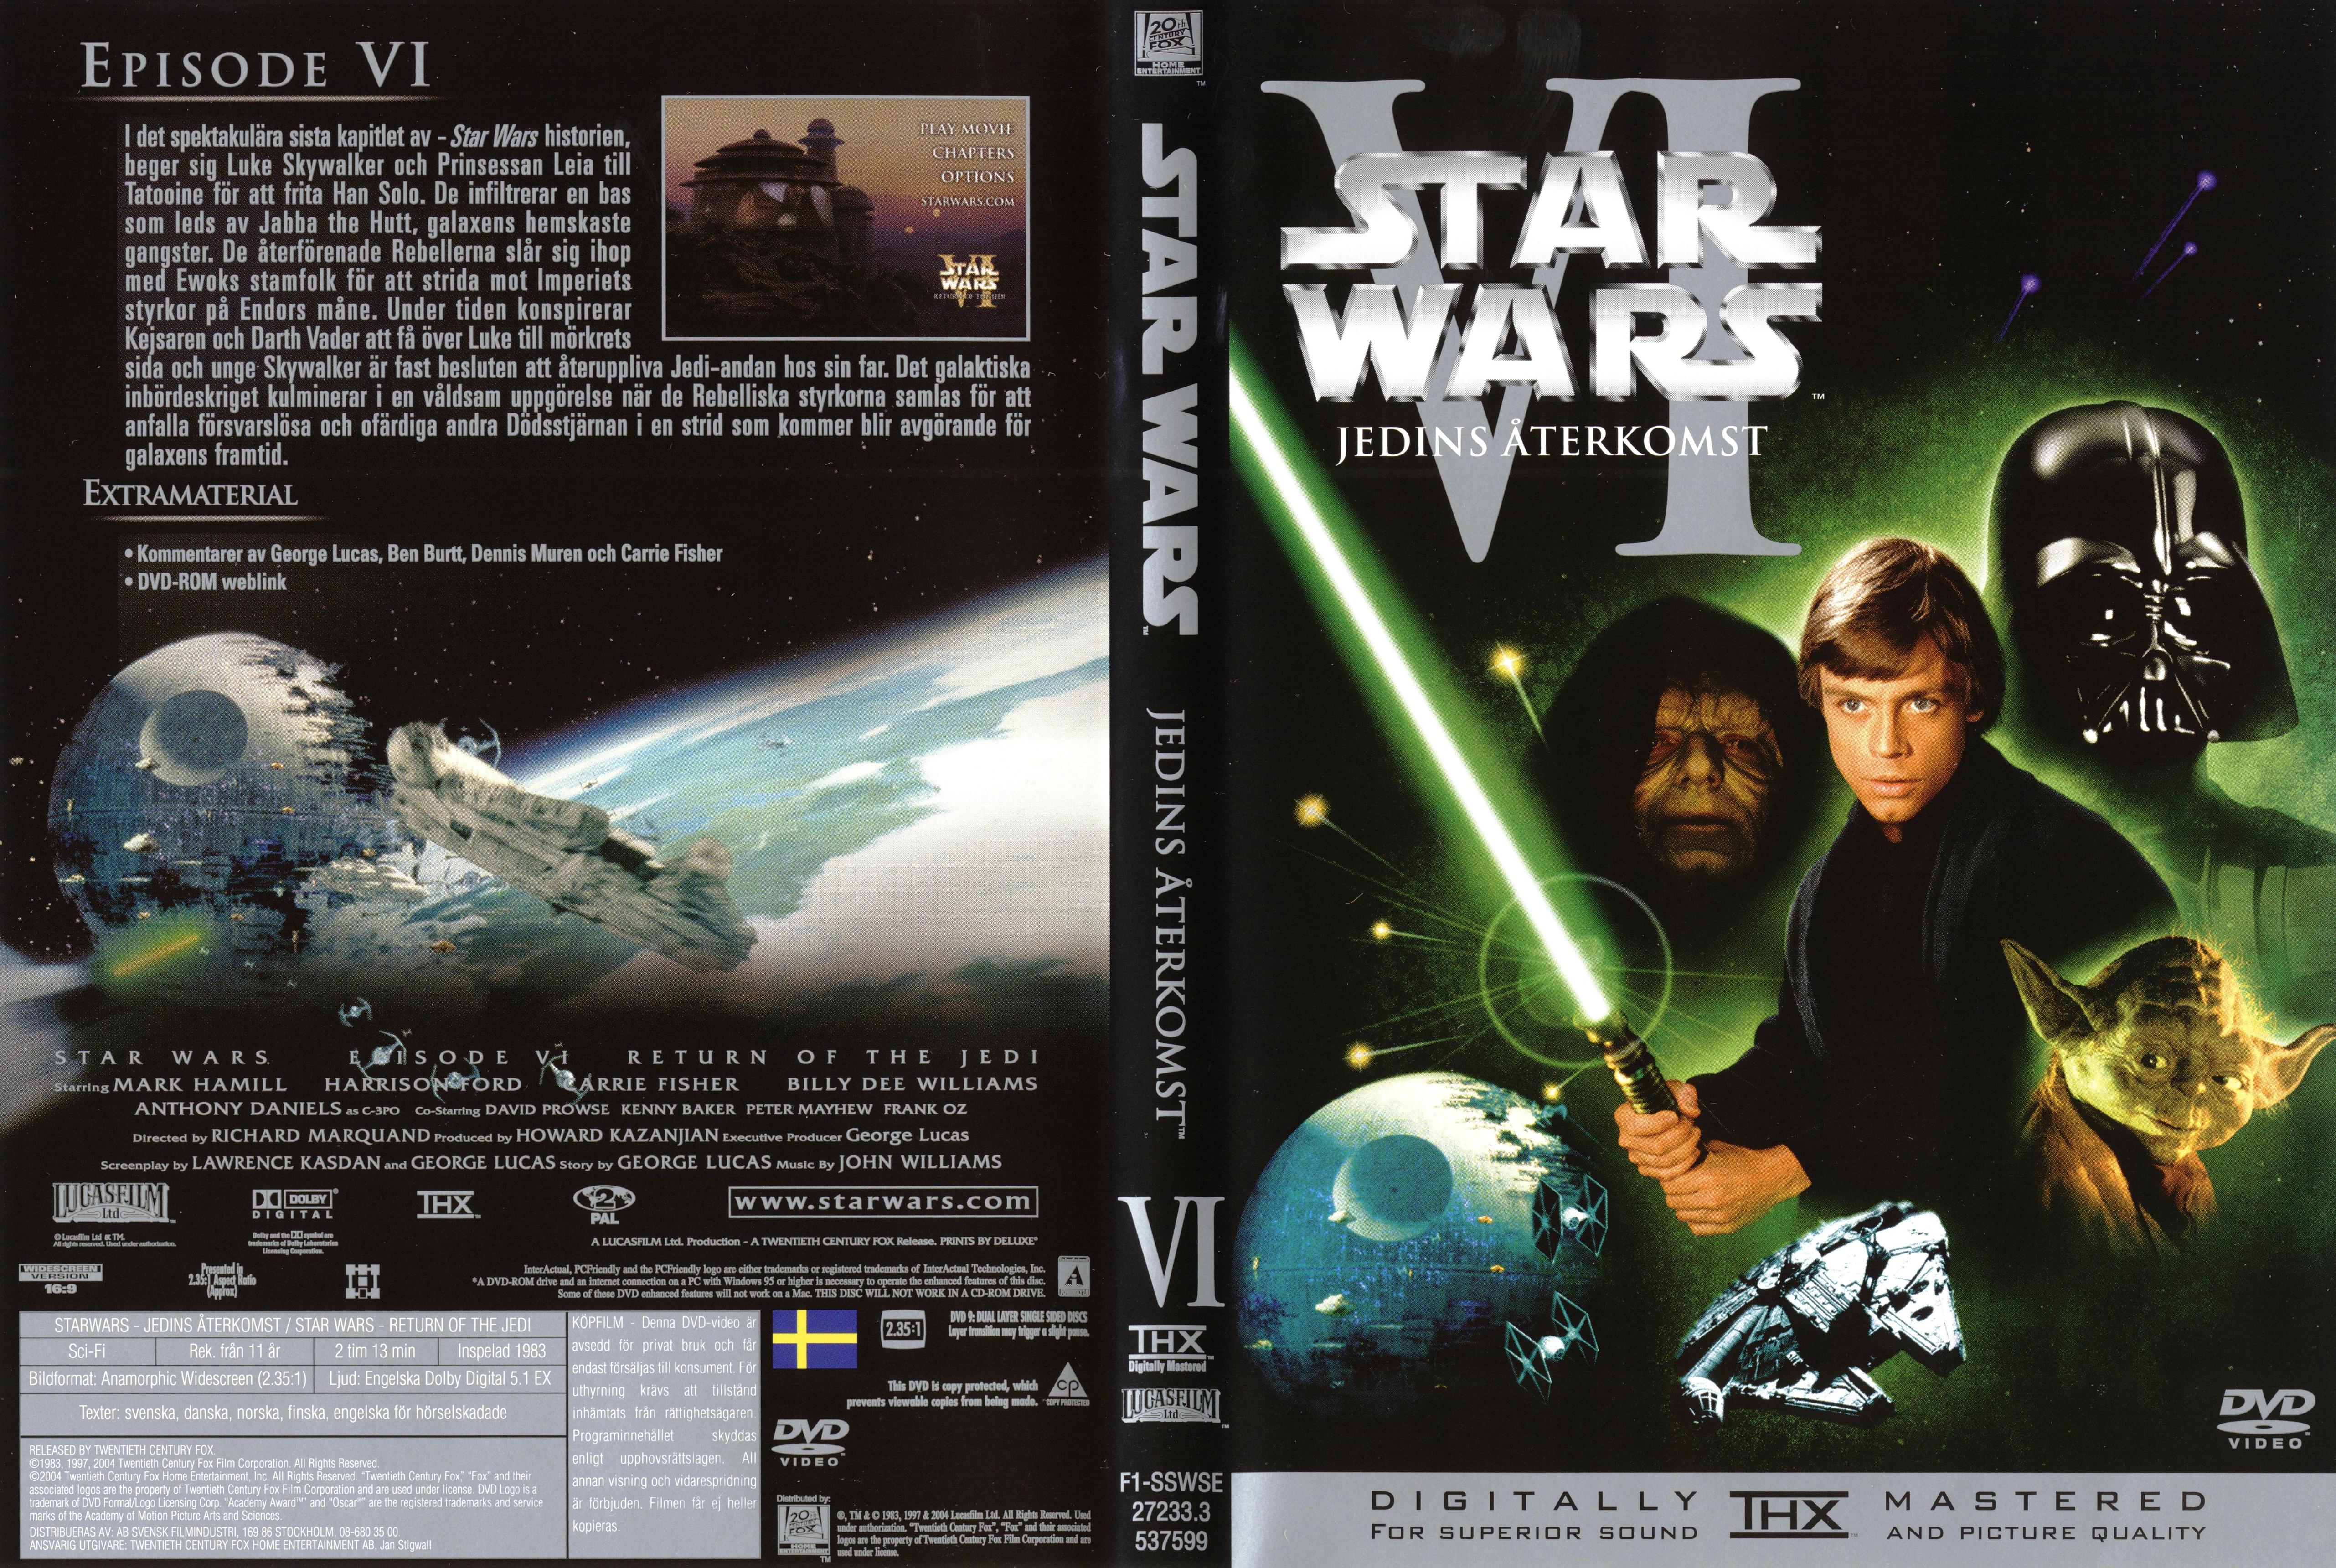 Star Wars Bluray 6 Film - Yabancı Blu-ray Filmler 'da -  1093798650